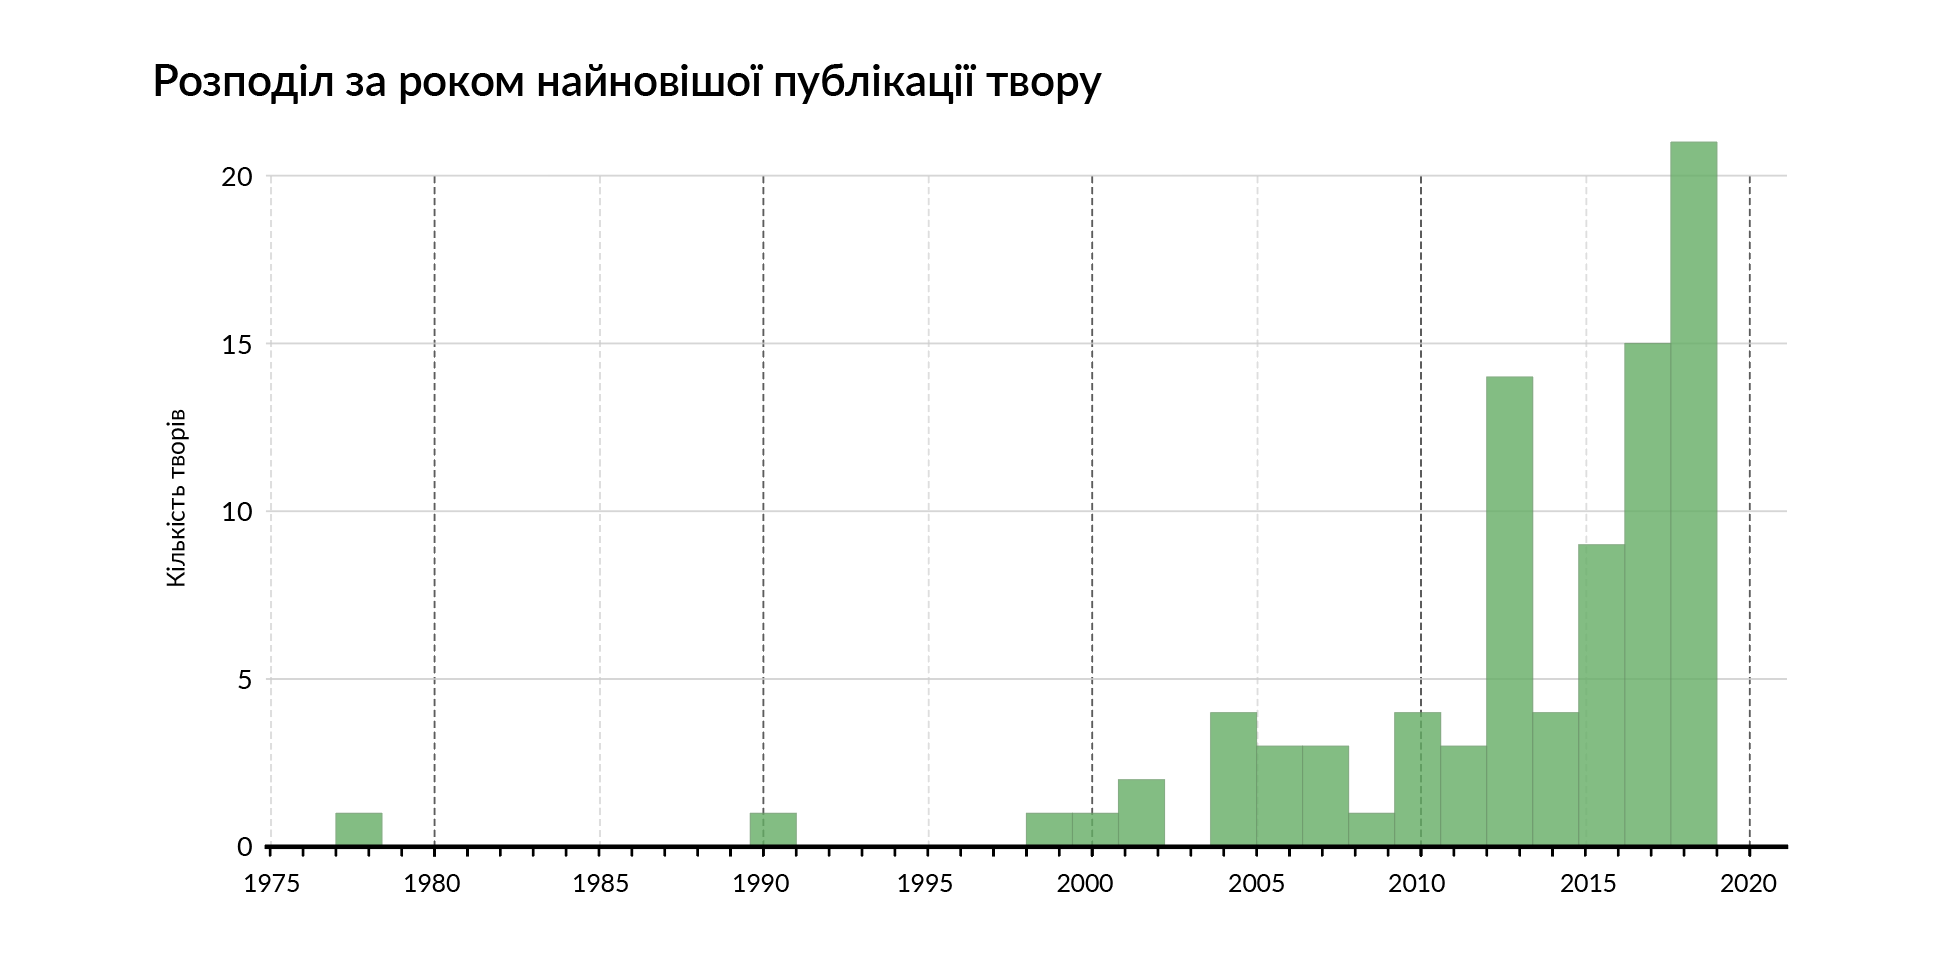 100 знакових творів українською мовою. Розподіл за роком найновішої публікації твору.